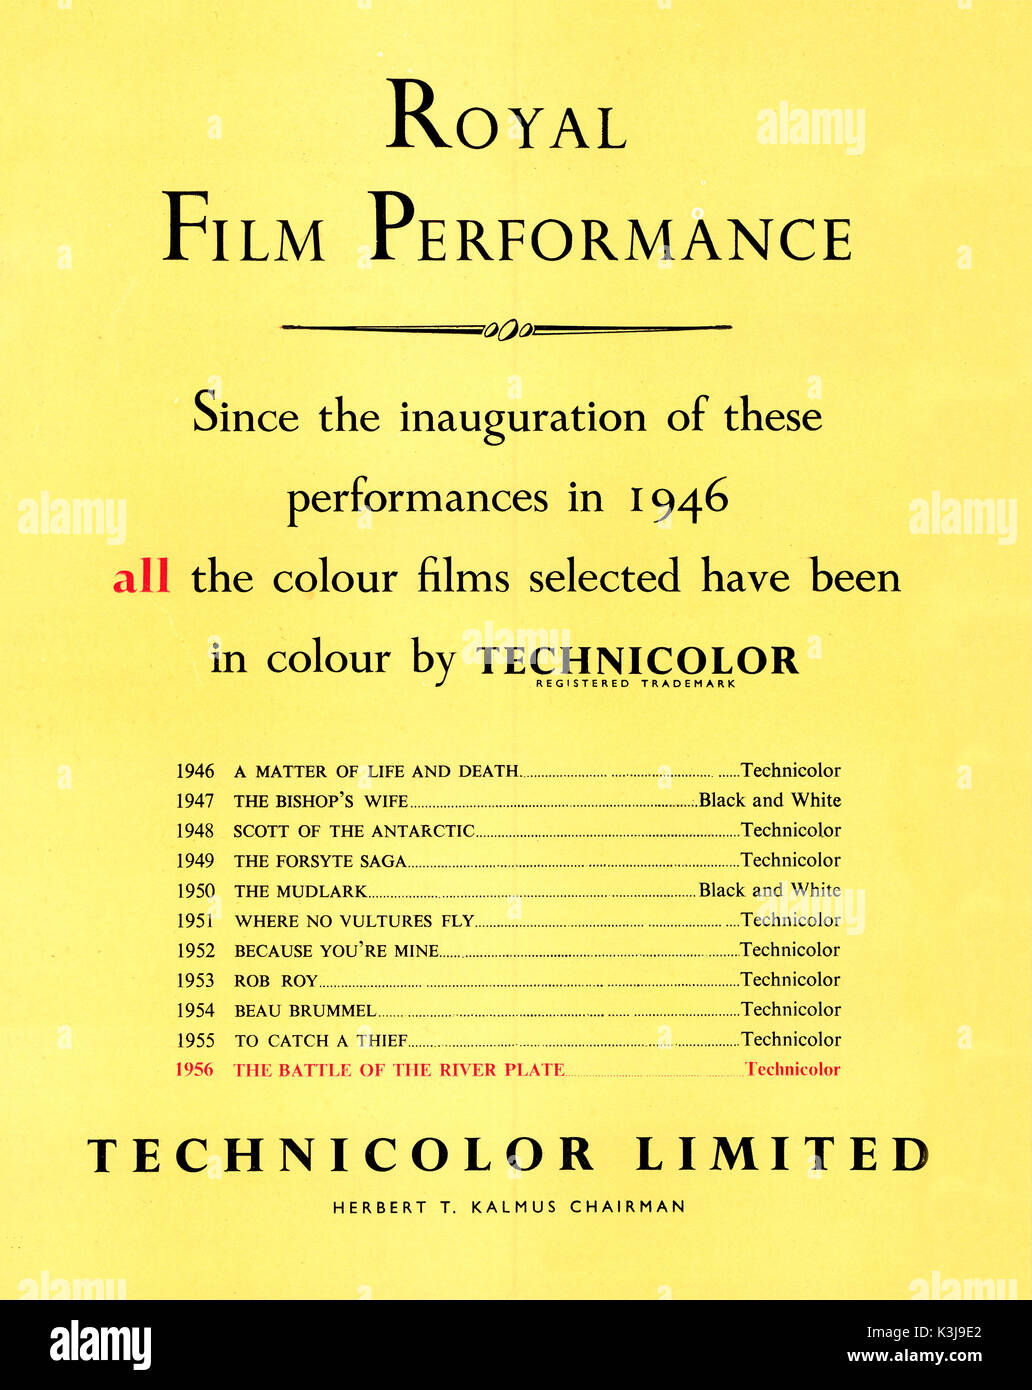 TECHNICOLOR: publicidad desde 1956 con la Royal Film Performance Foto de stock